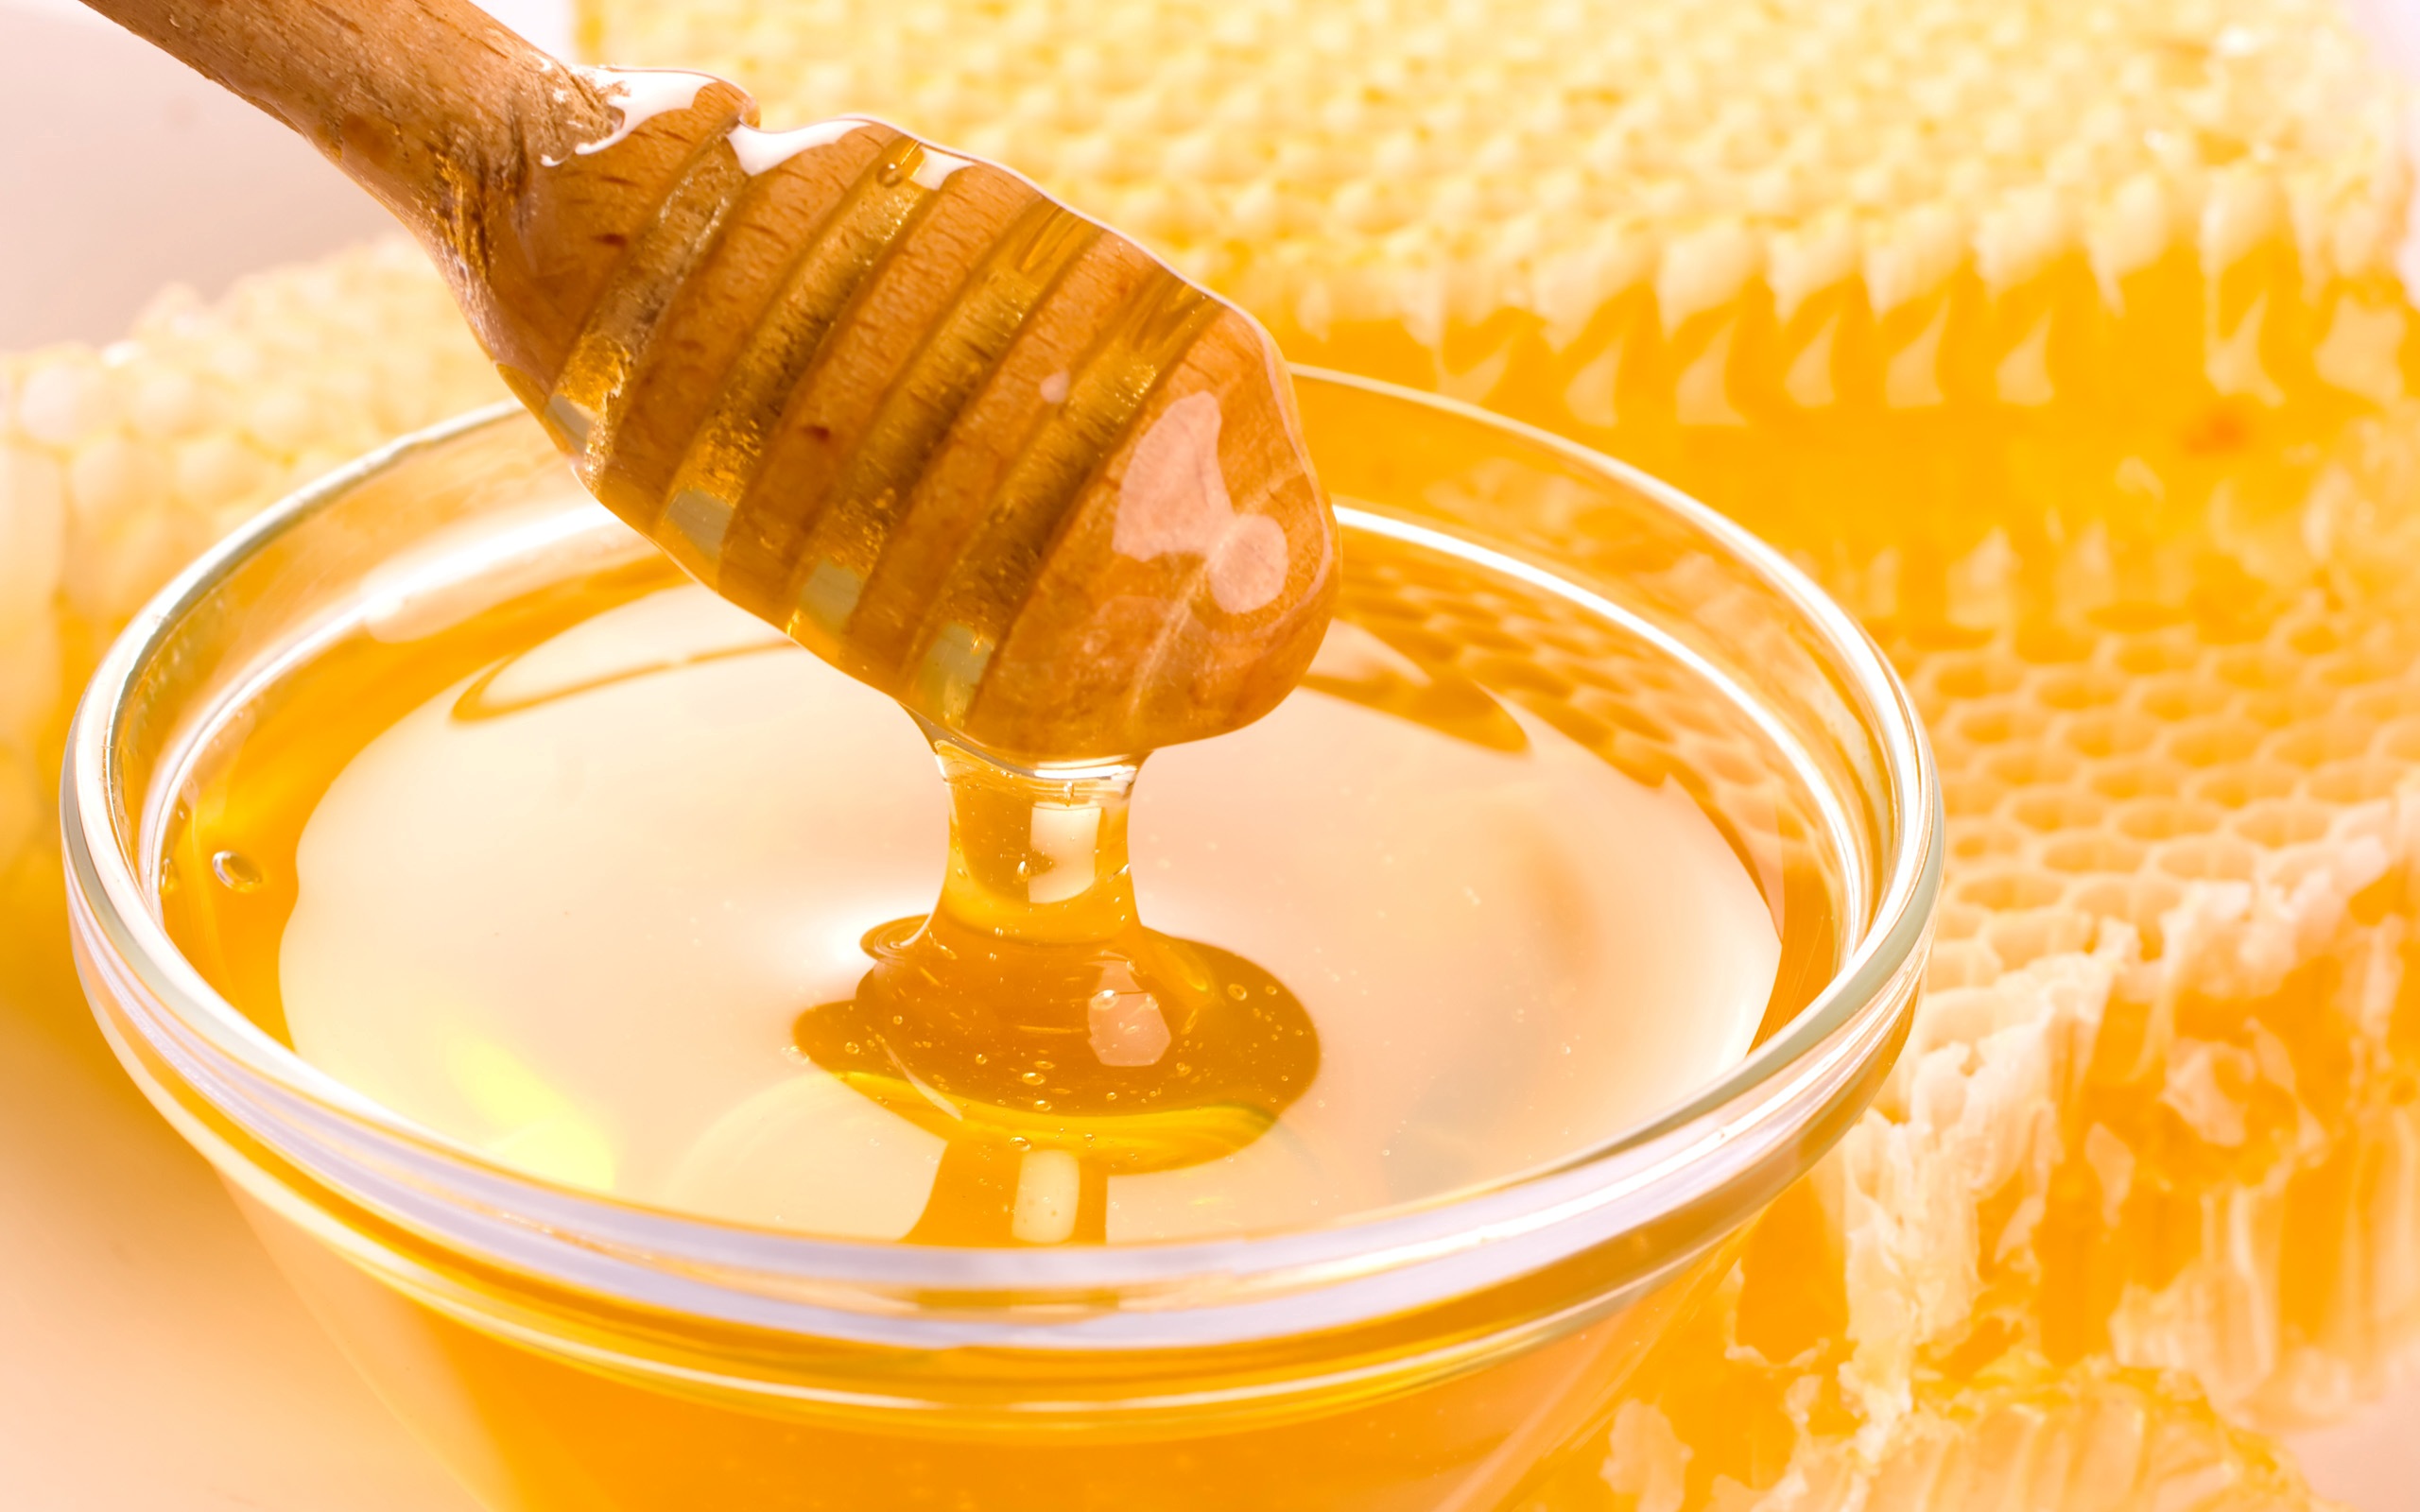  أهم 9 فوائد للعسل الطبيعي على الجسم وخبراء يصفونه بالمعجرة